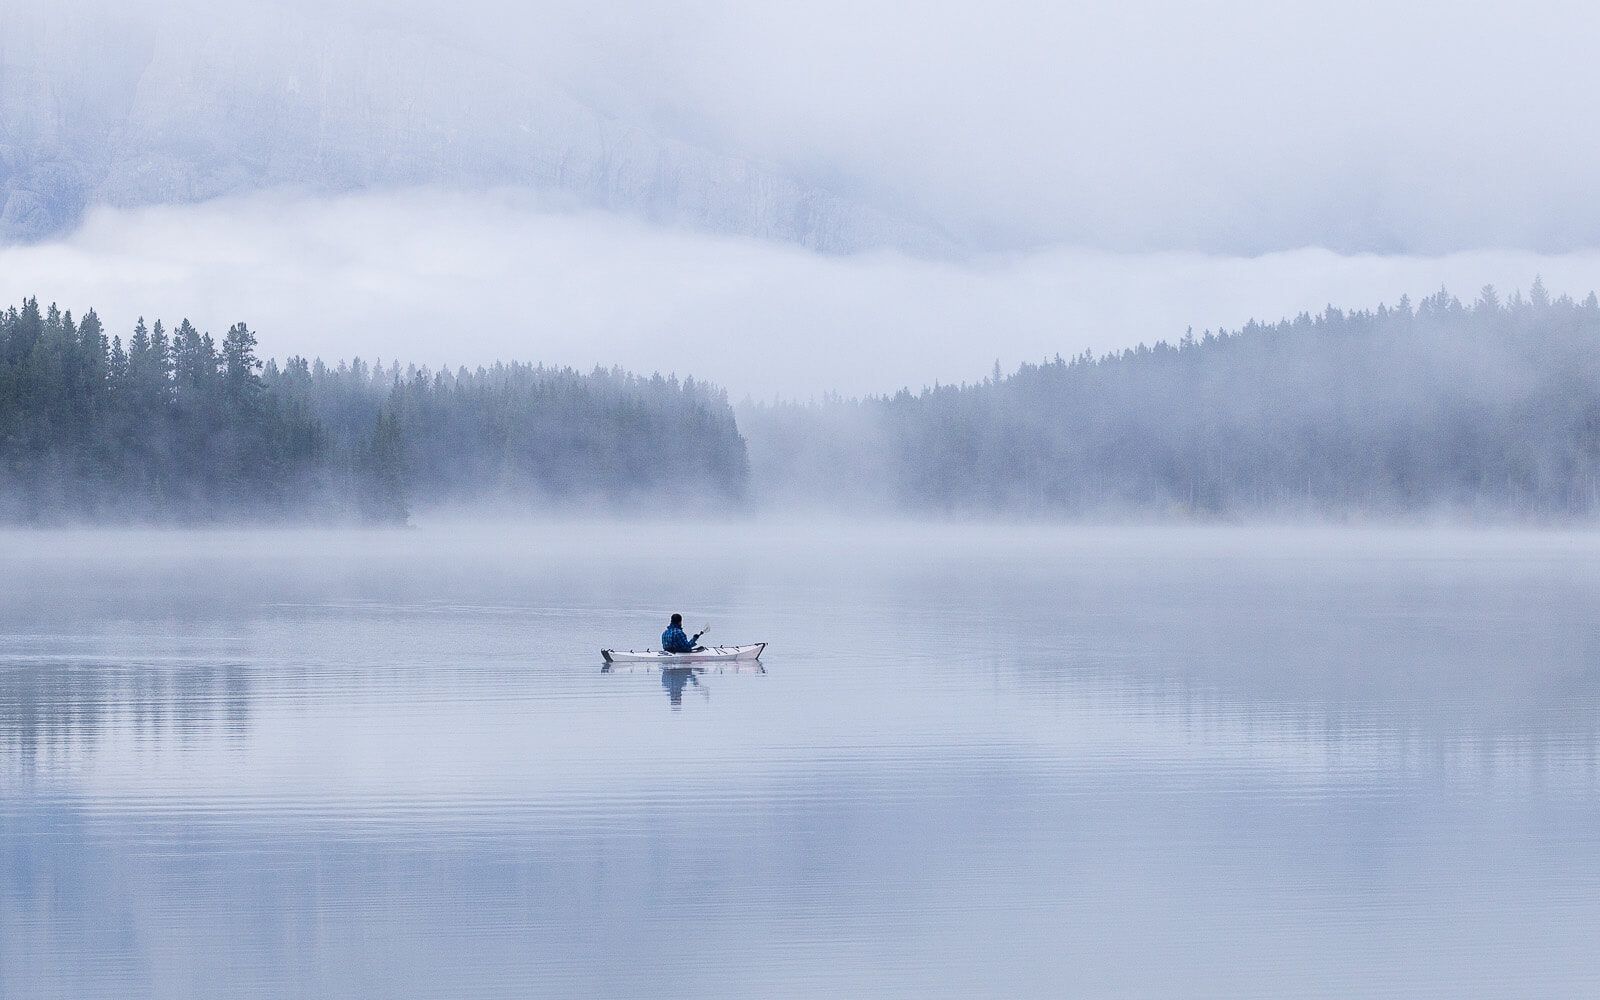 Oru Kayak on misty lake